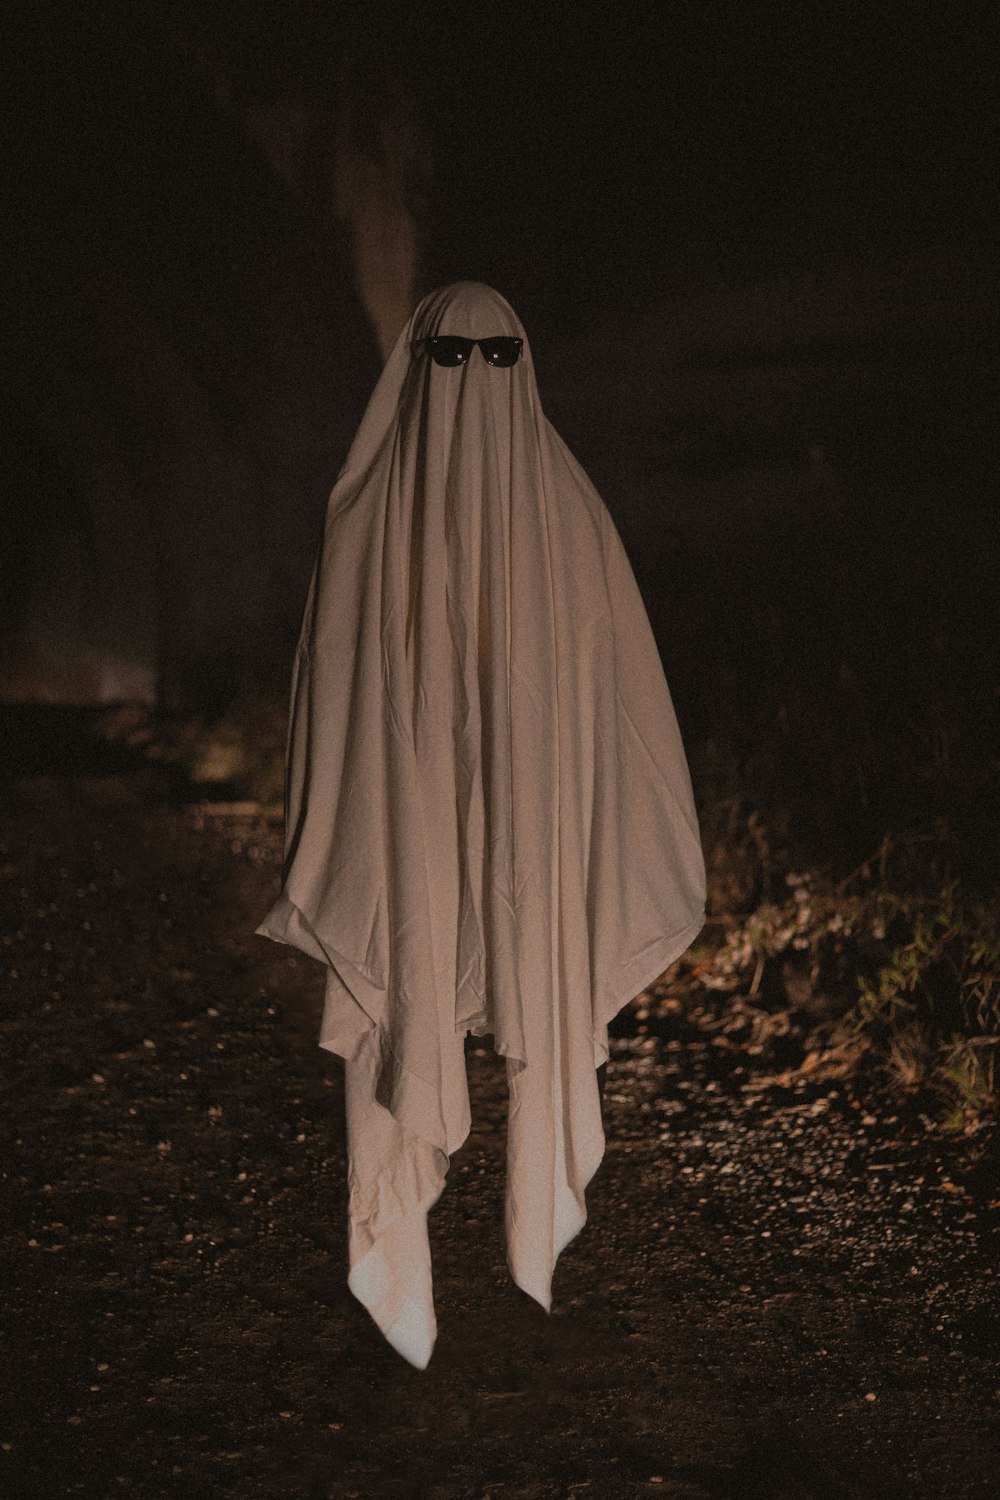 Persona con túnica blanca de pie sobre hojas secas marrones durante la noche